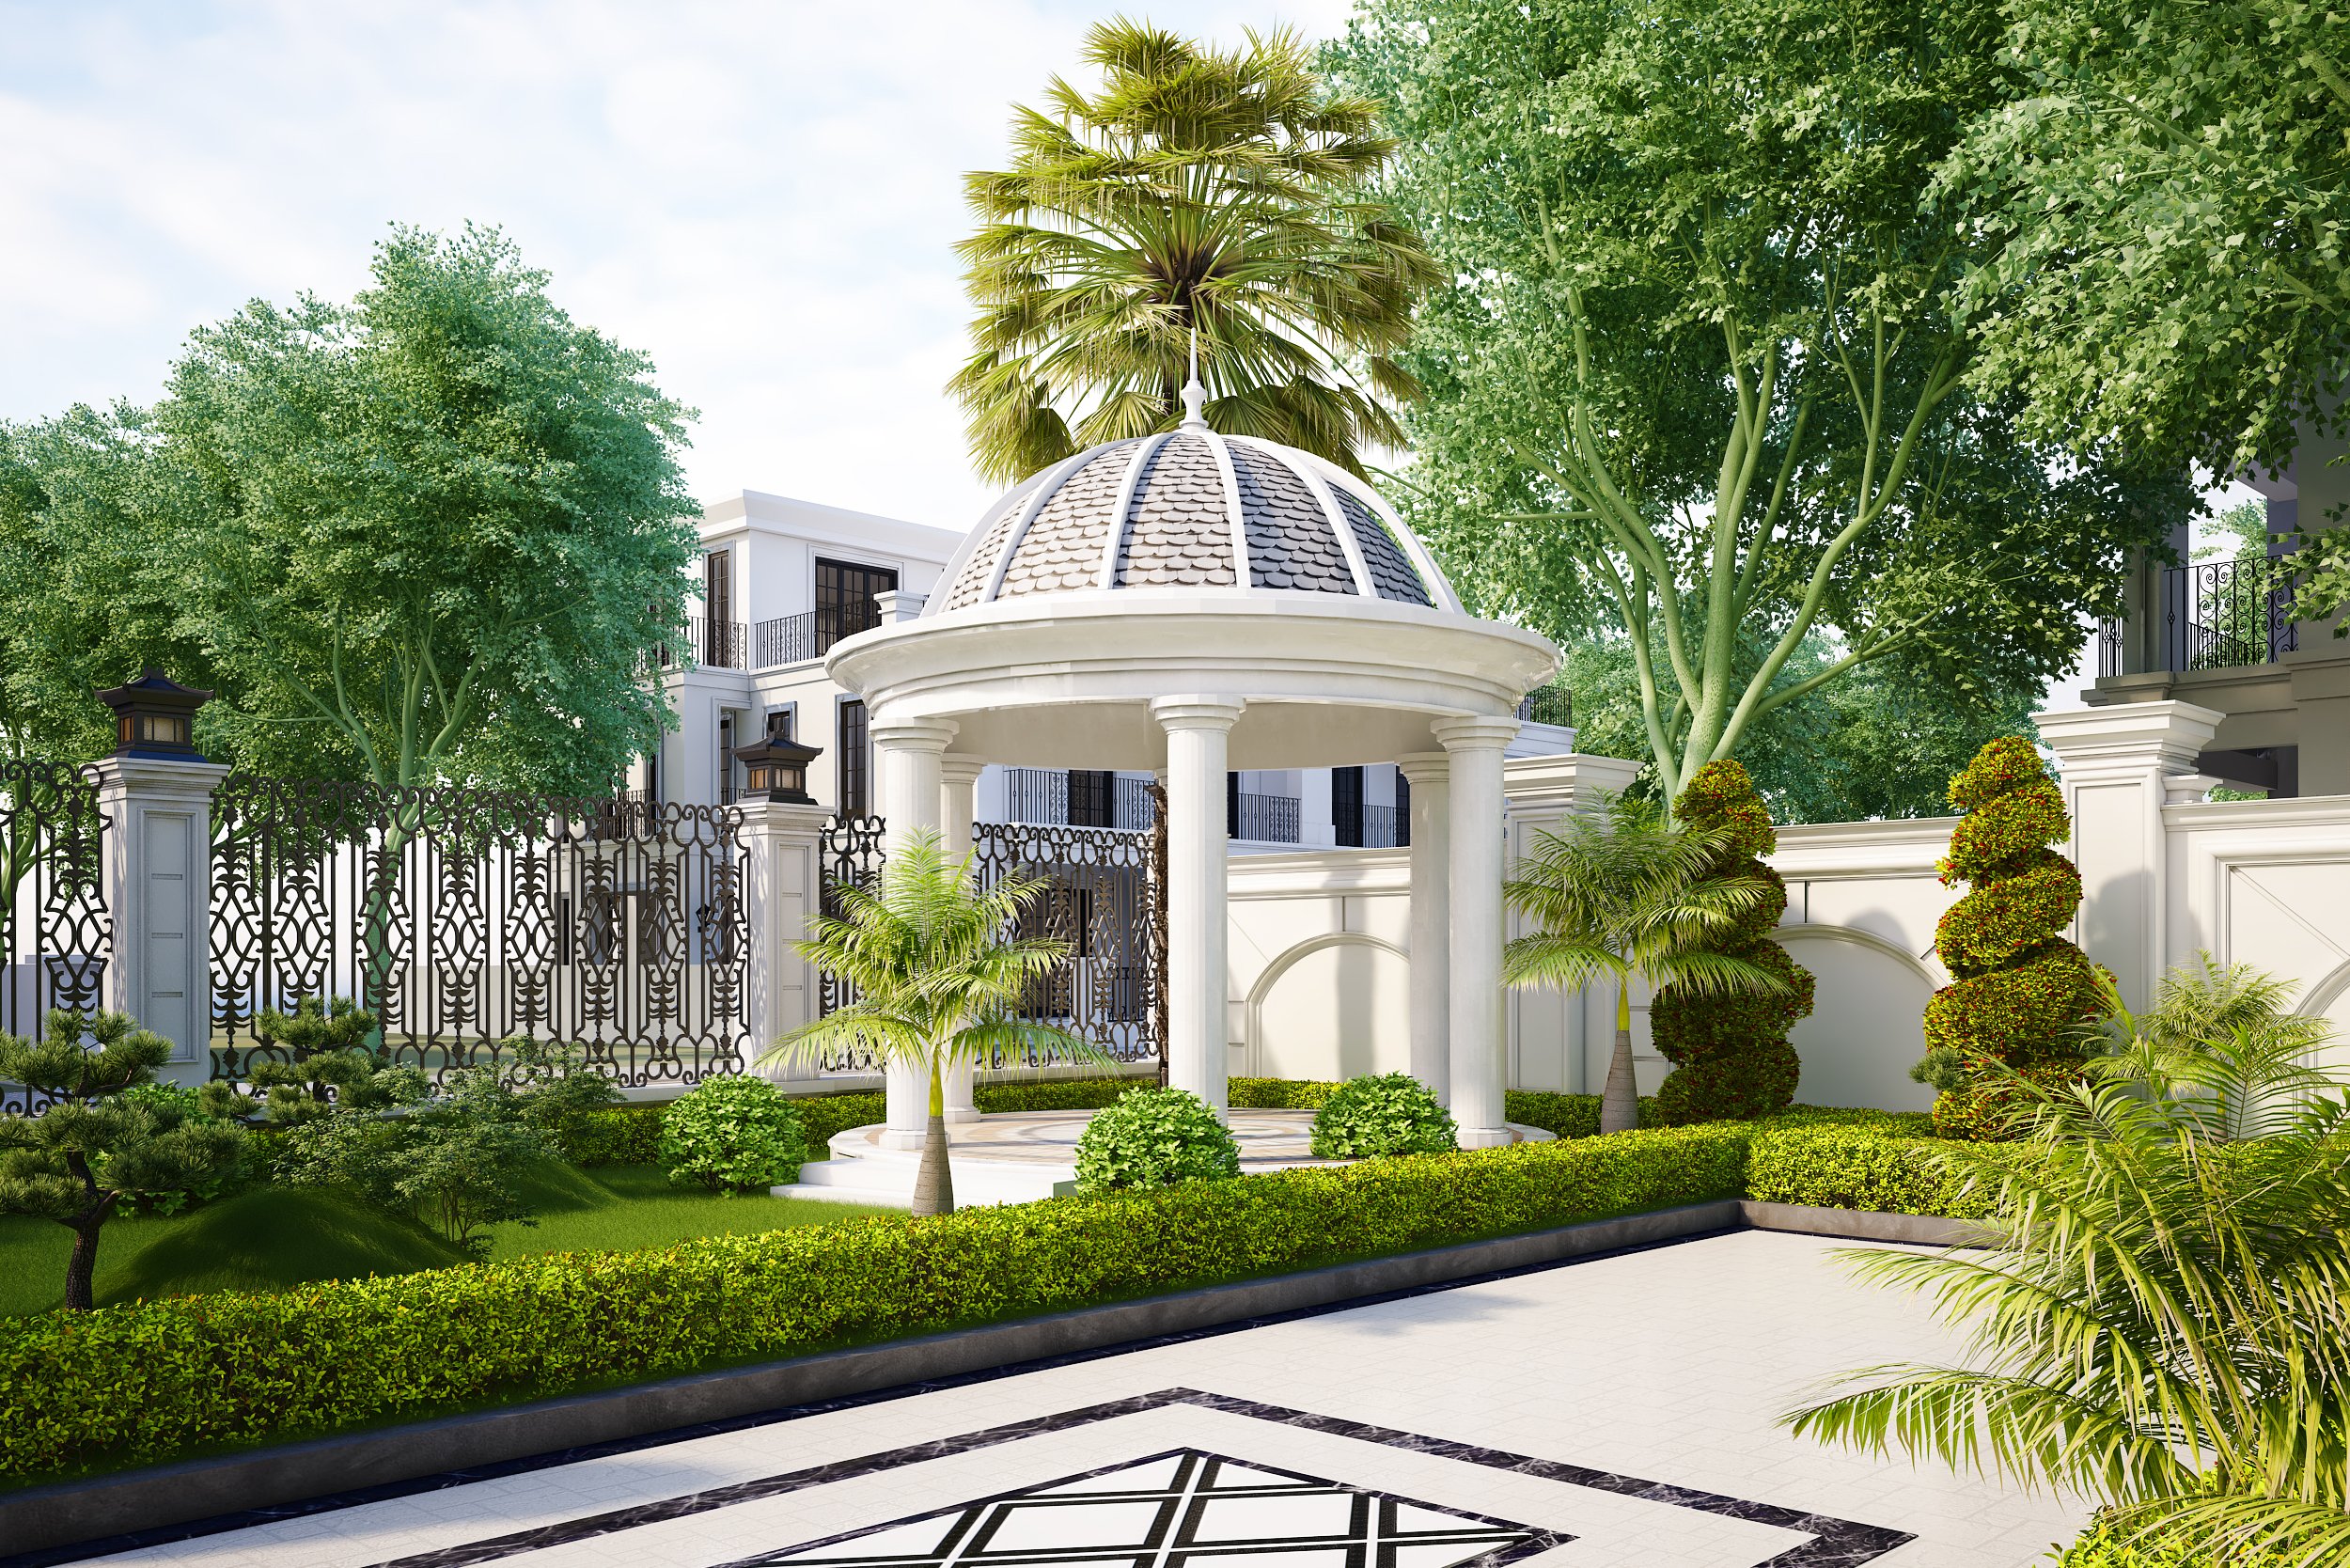 Thiết kế villa 1 tầng Đông Dương với sân vườn thoáng mát